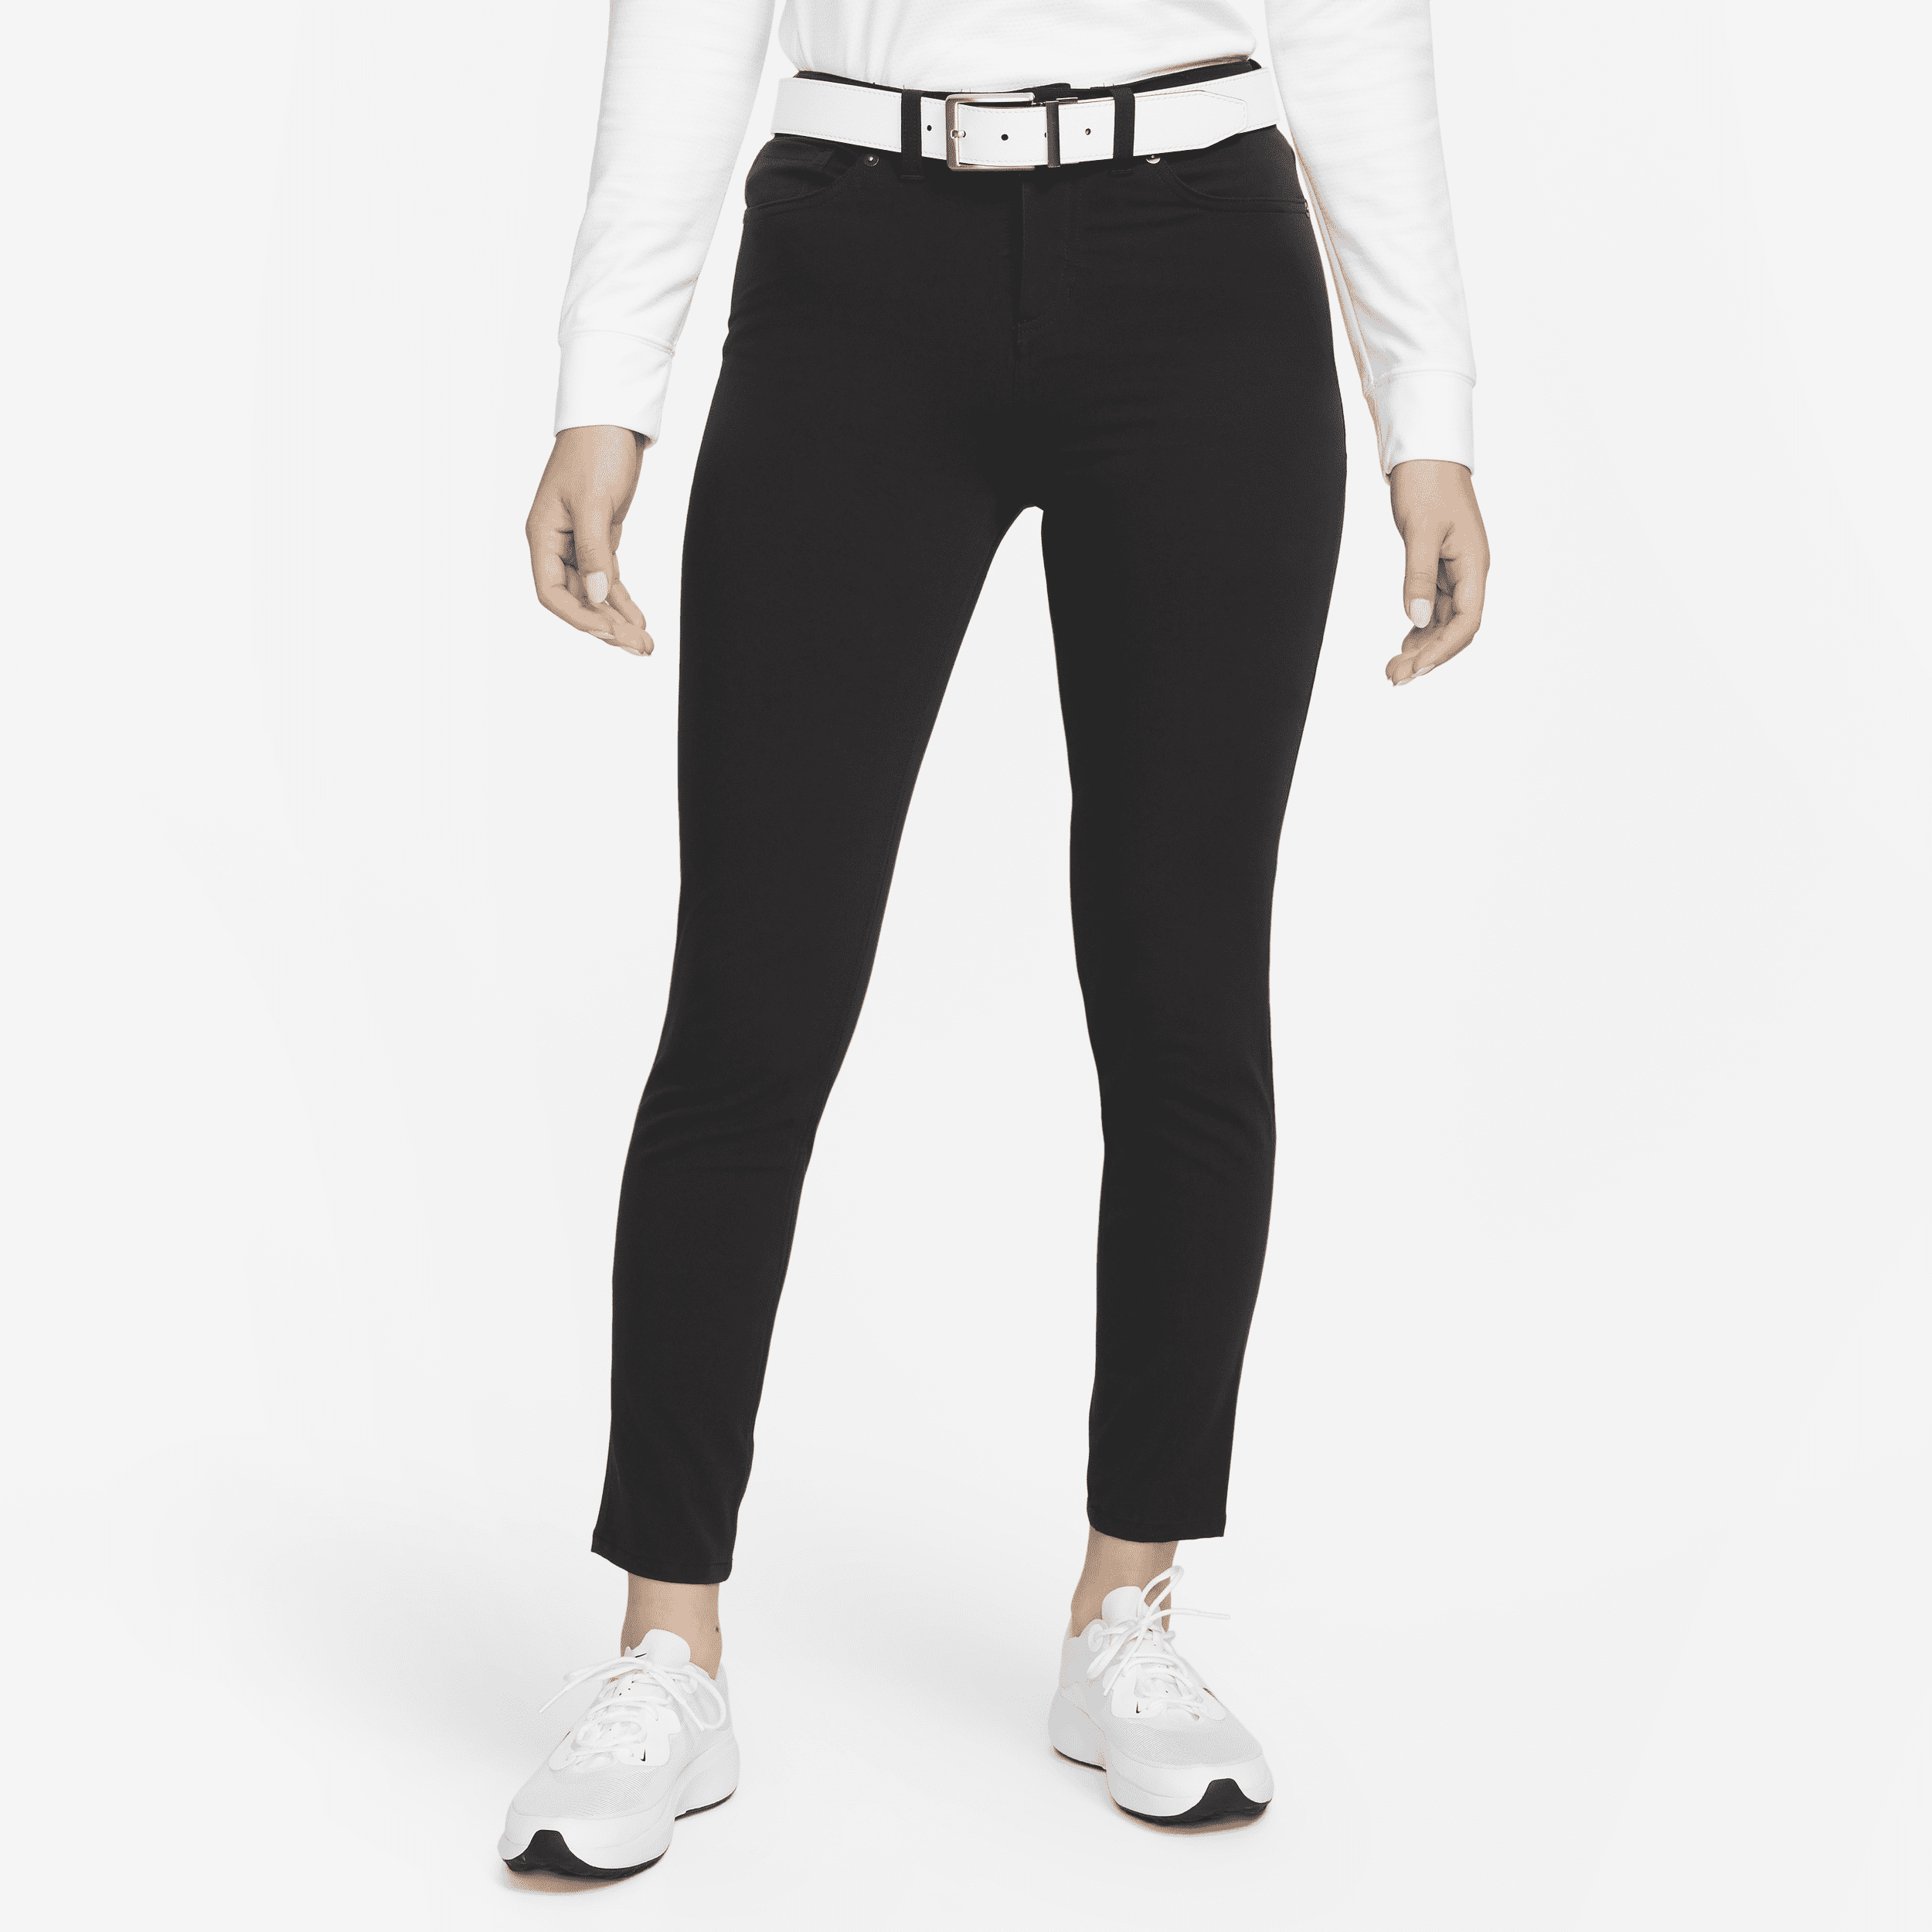 Nike-golfbukser med slank pasform til kvinder - sort